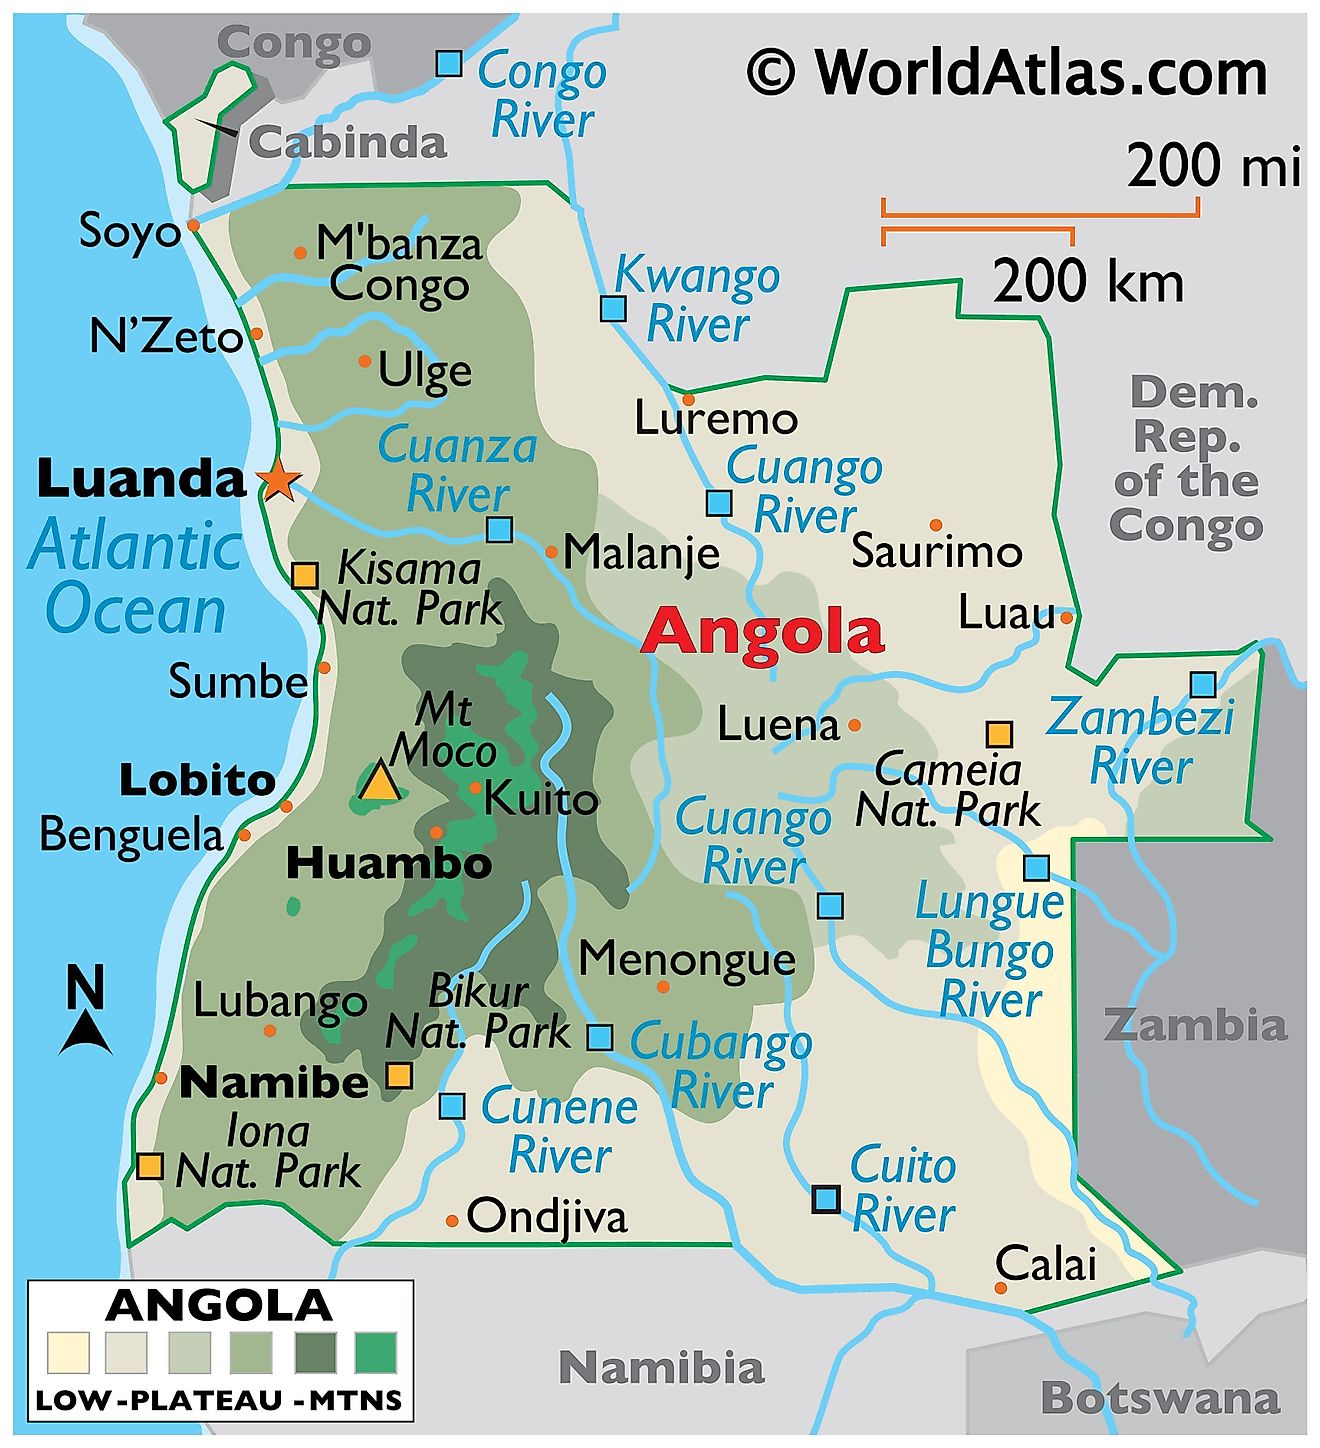 Mapa físico de Angola que muestra sus principales parques nacionales, ciudades y ríos. En el mapa se muestra el punto más alto del Monte Moco, así como su capital, Lunda. También se presentan las fronteras internacionales de Angola.